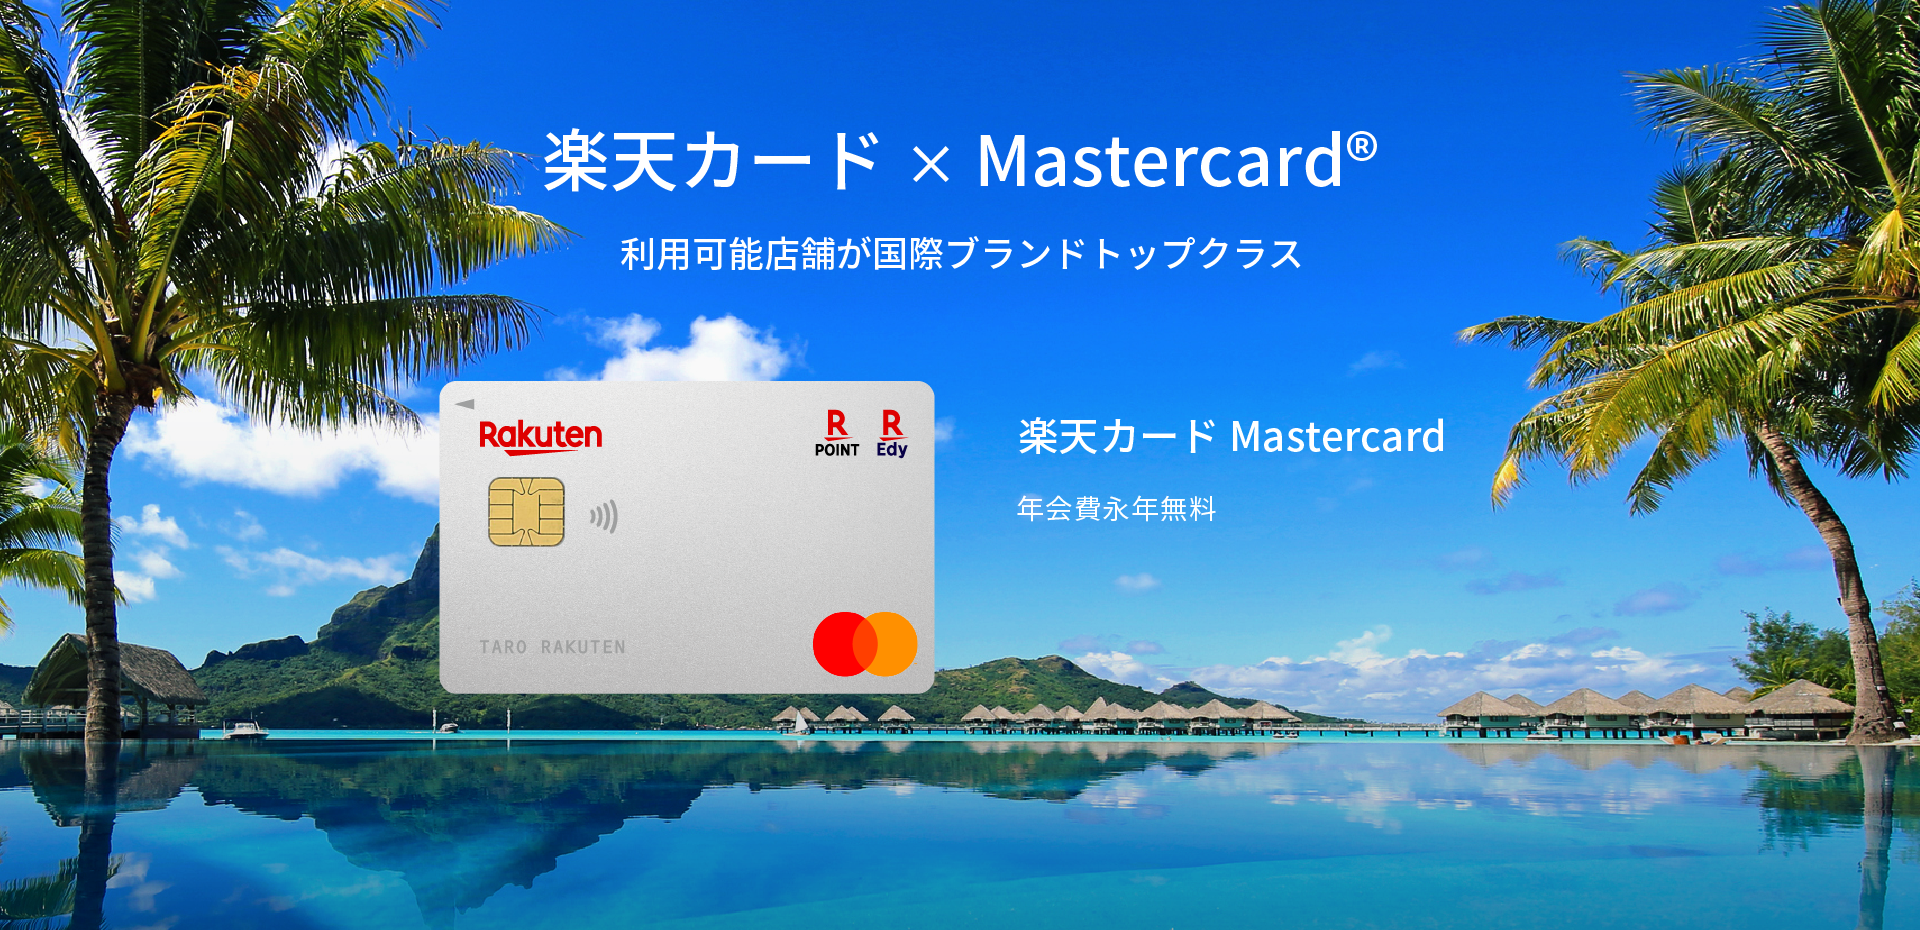 楽天カード×Mastercard® 利用可能店舗が国際ブランドトップクラス 楽天カード Mastercard カード 年会費永年無料